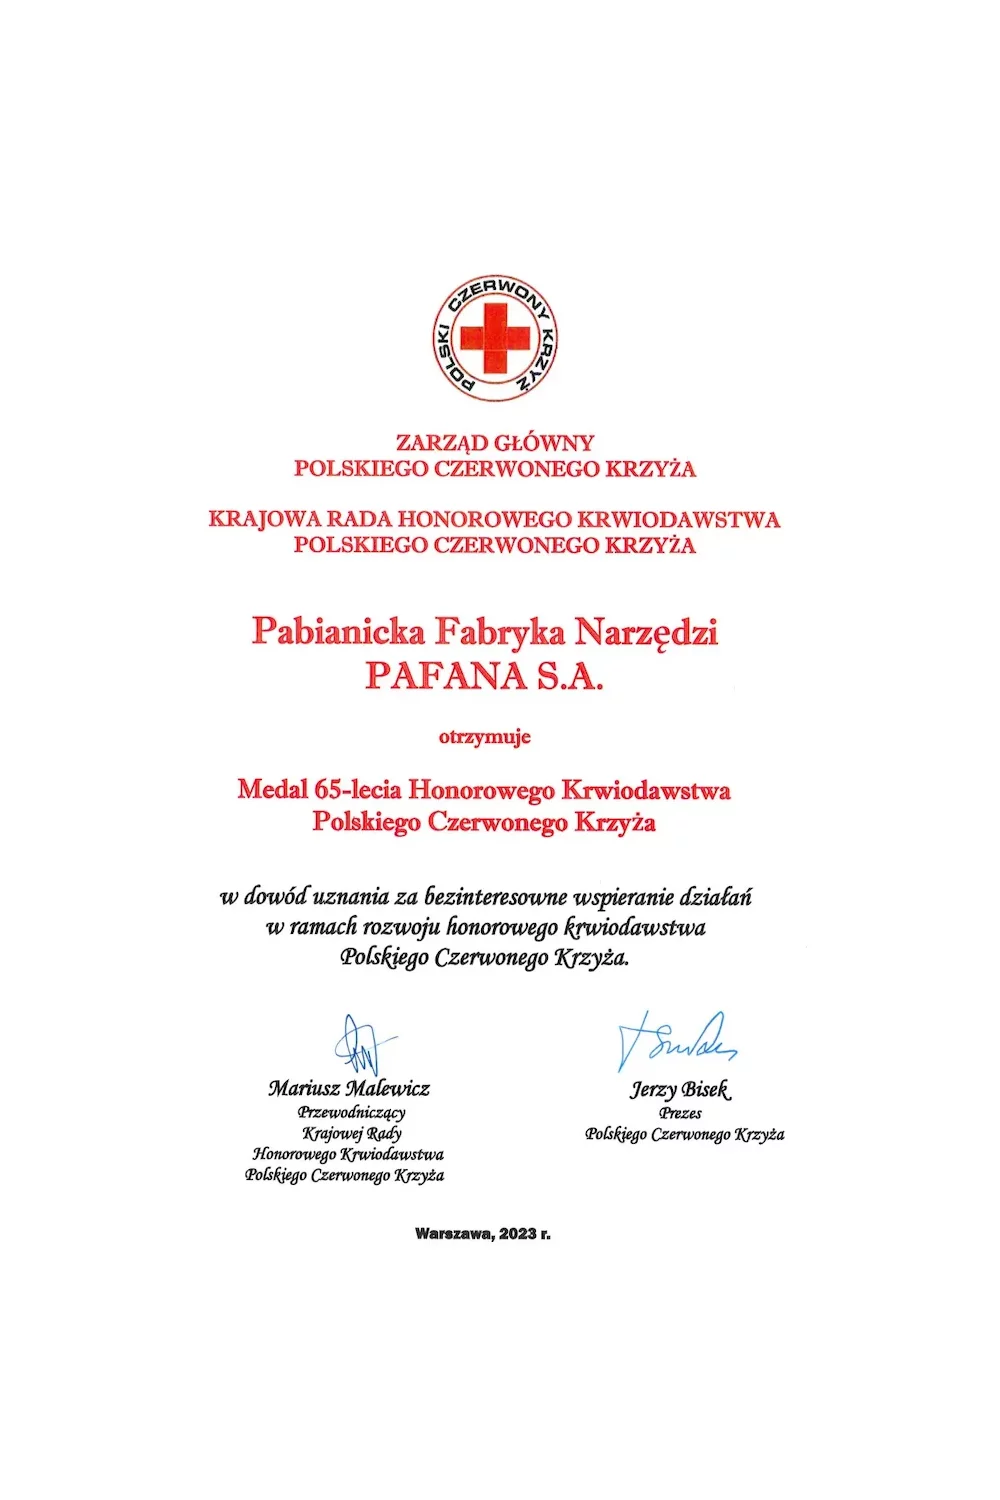 Medal 65-lecia Honorowego Krwiodawstwa Polskiego Czerwonego Krzyża - zdjęcie